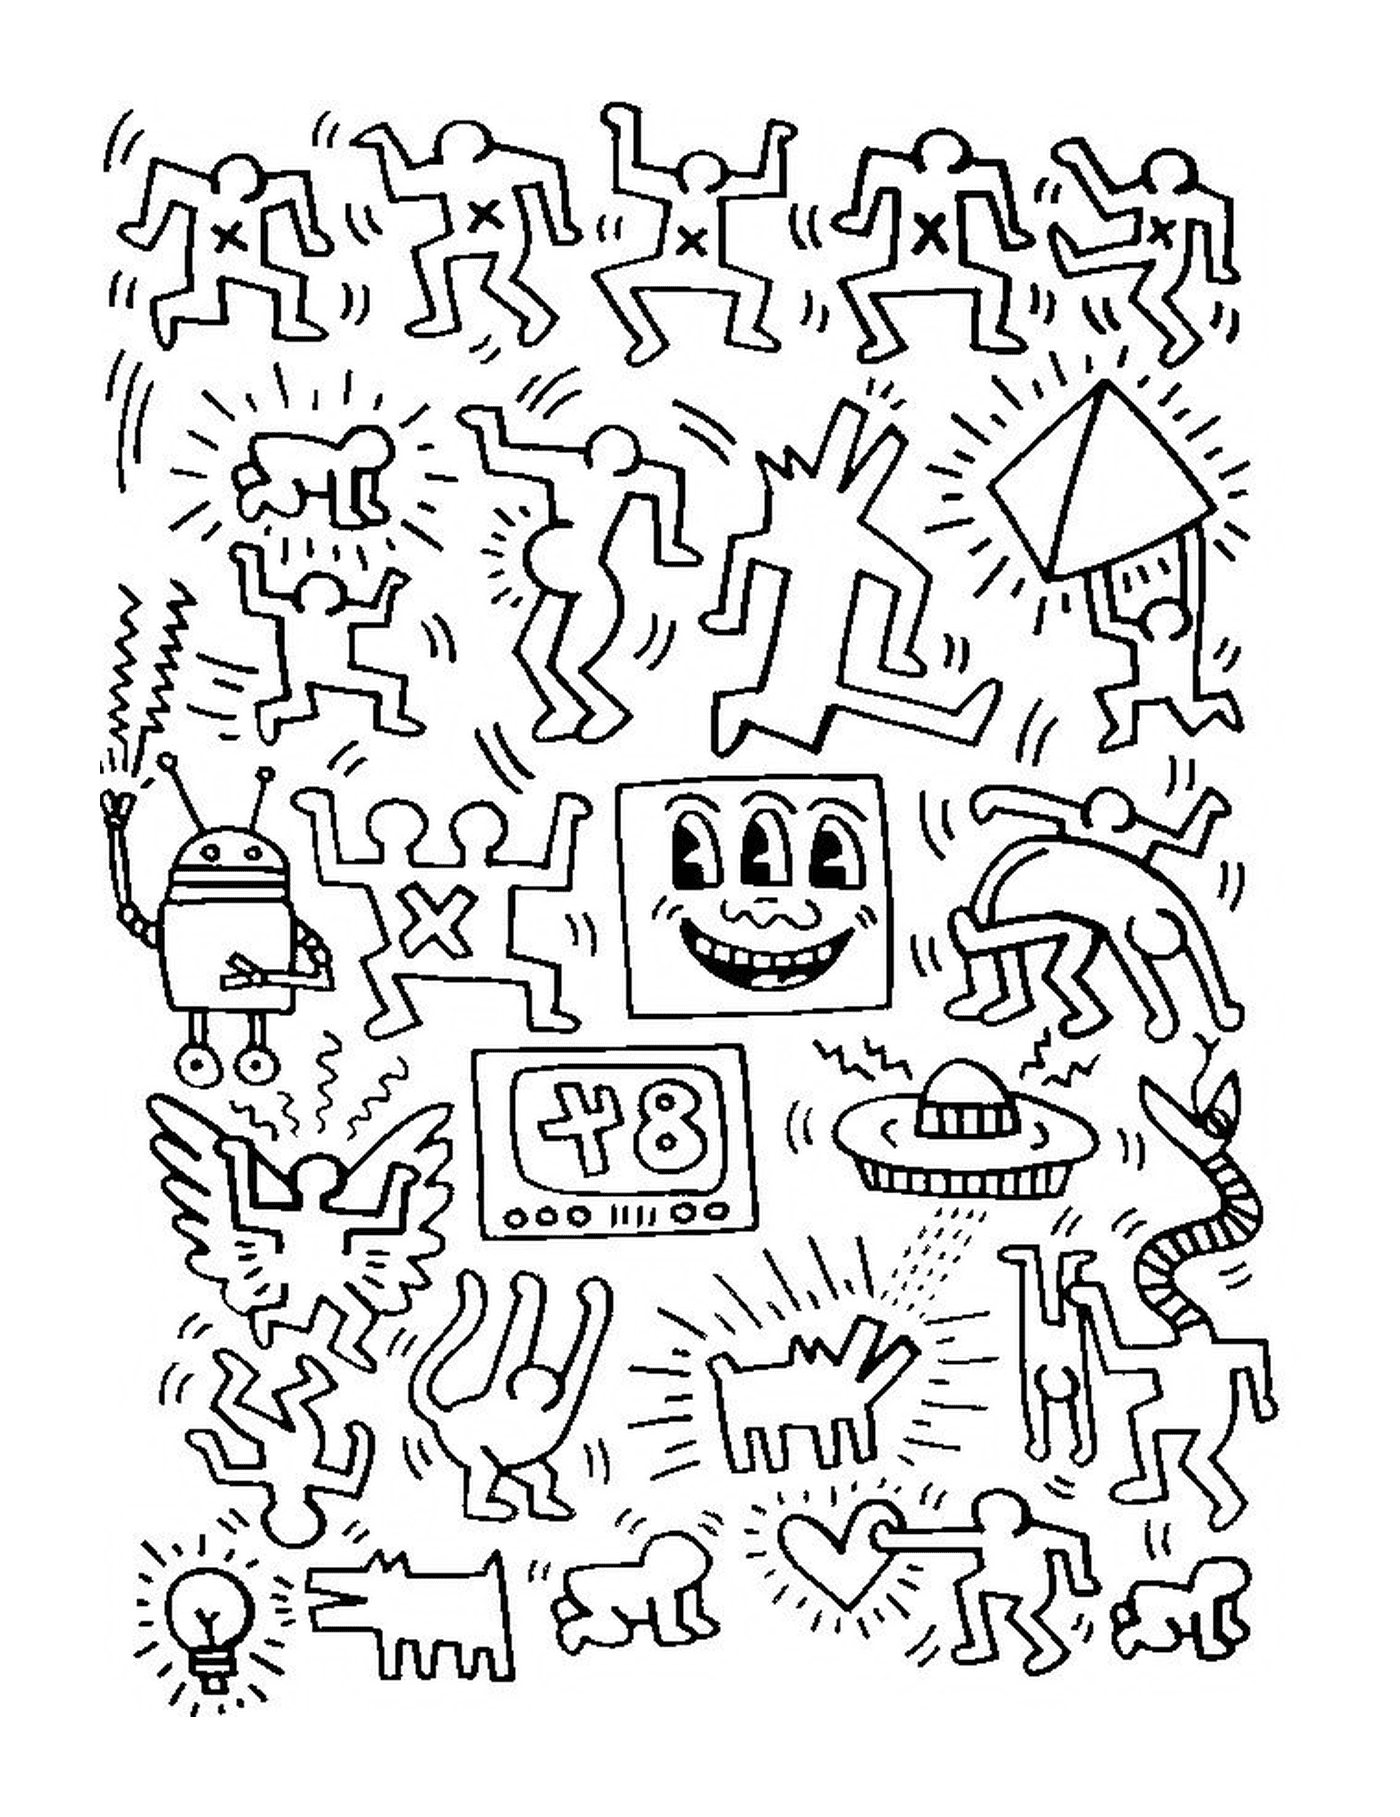  un gruppo di persone secondo Keith Haring 